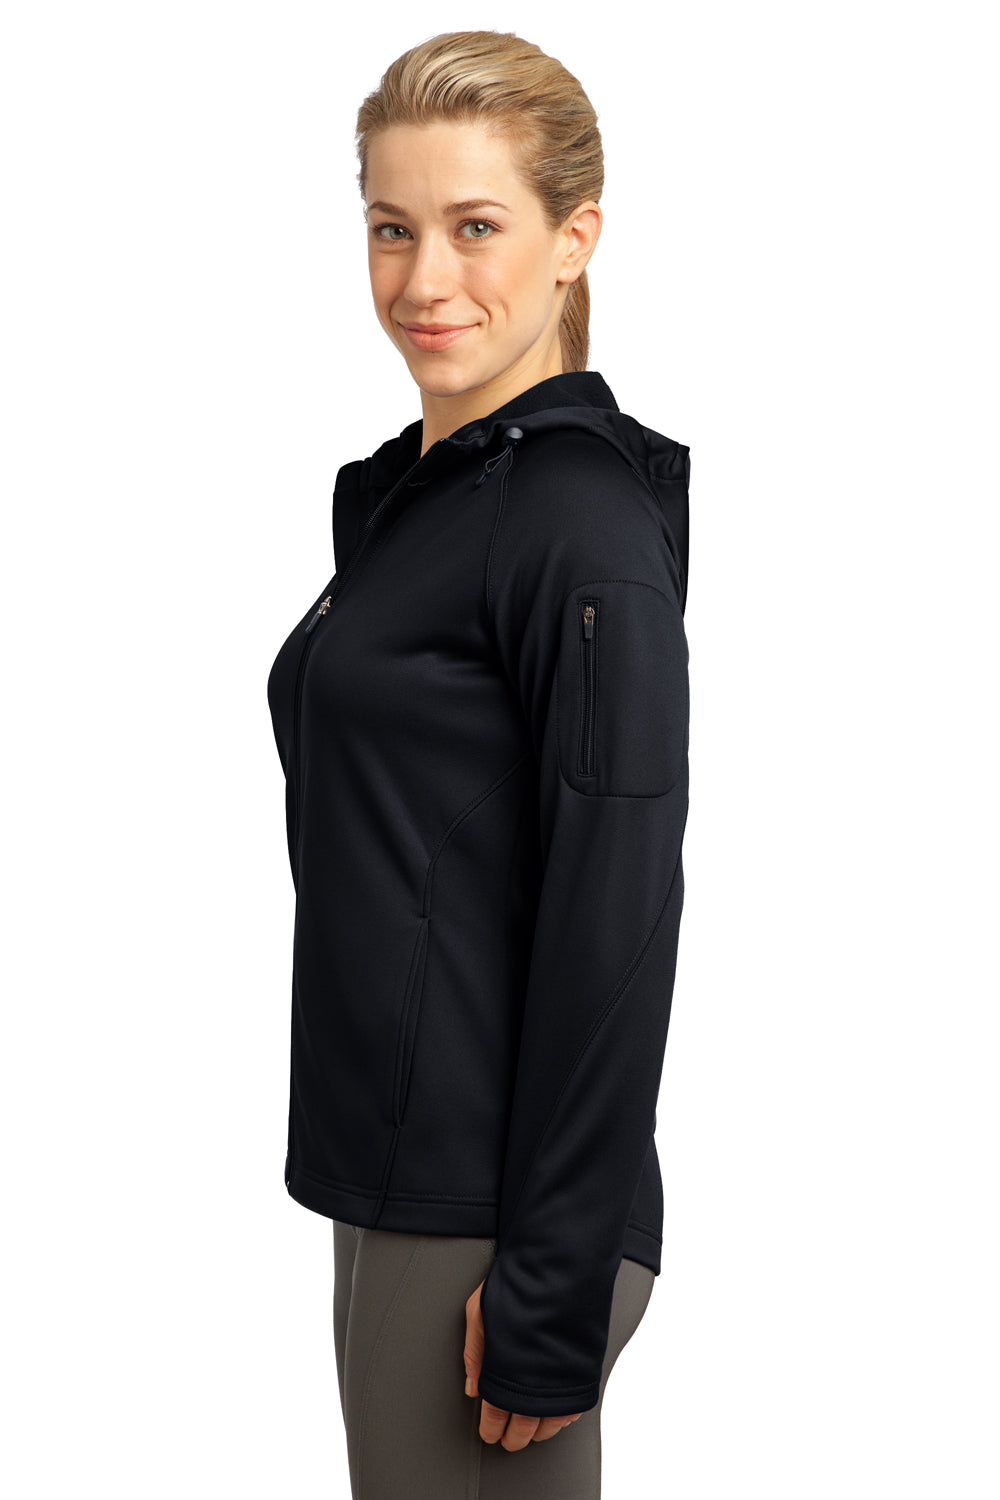 Sport-Tek L248 Womens Tech Moisture Wicking Fleece Full Zip Hooded Sweatshirt Hoodie Black Side